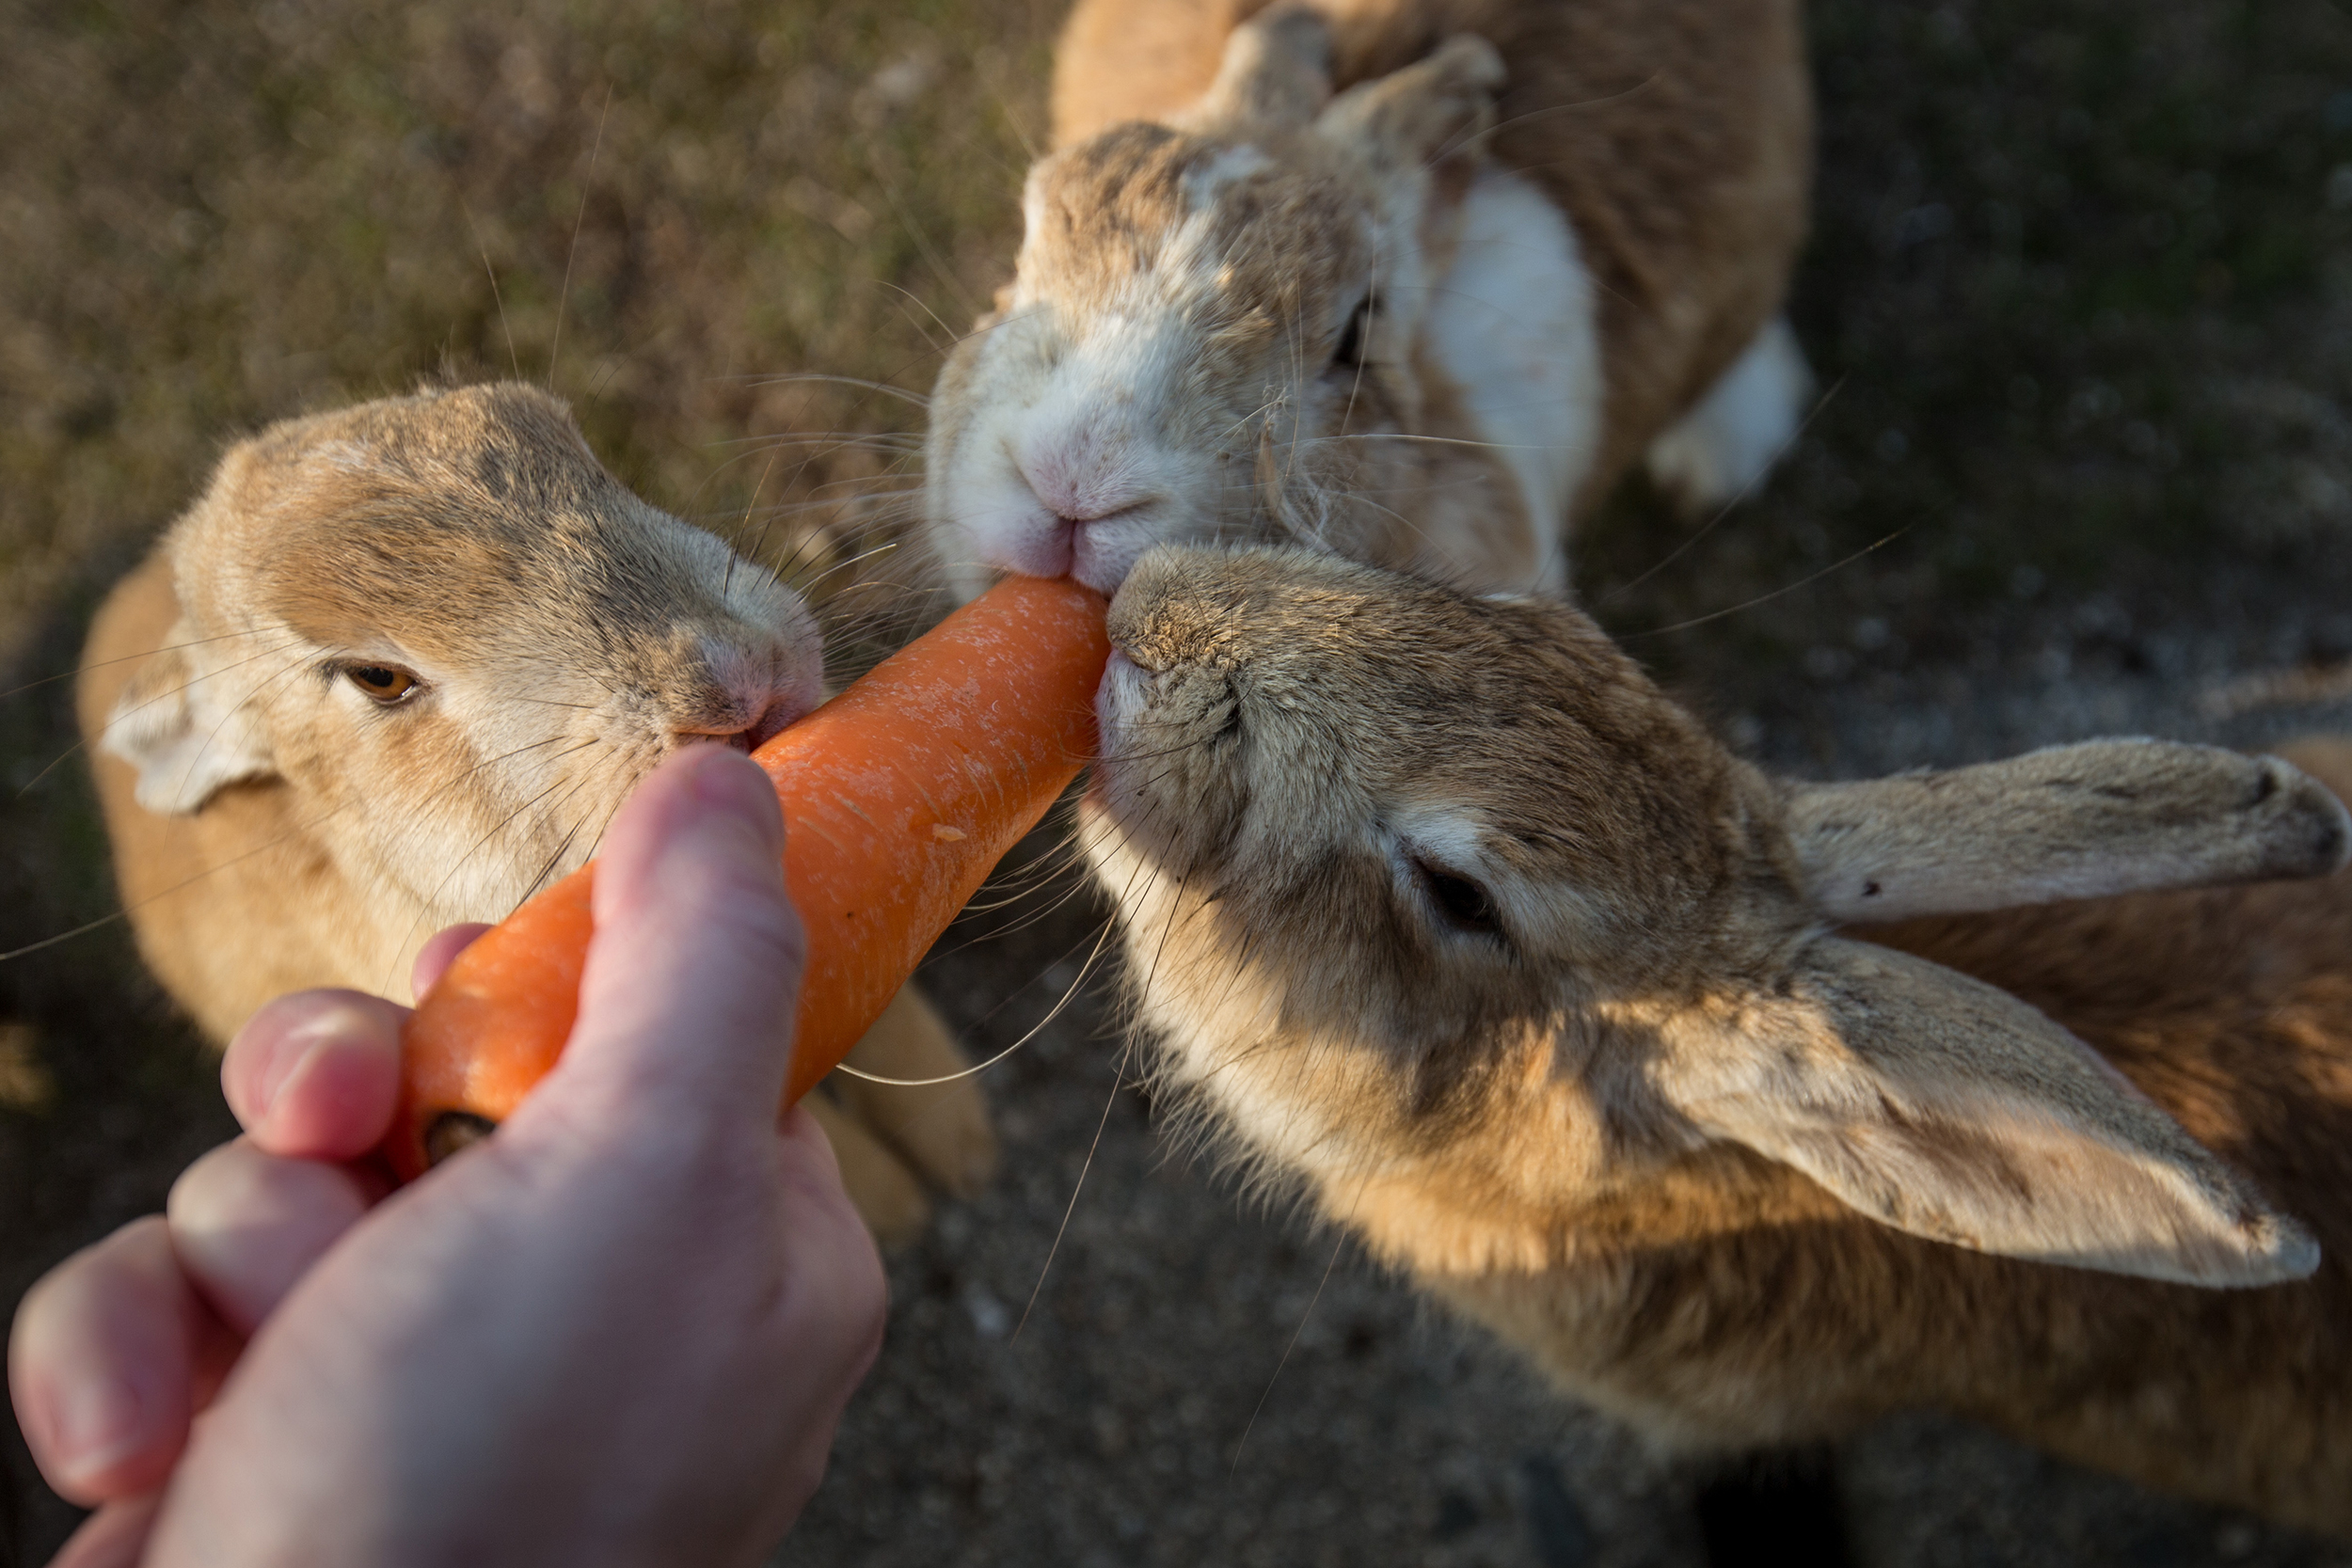 A tourist feeds rabbits on Okunoshima Island on Feb. 24, 2014 in Takehara, Japan.